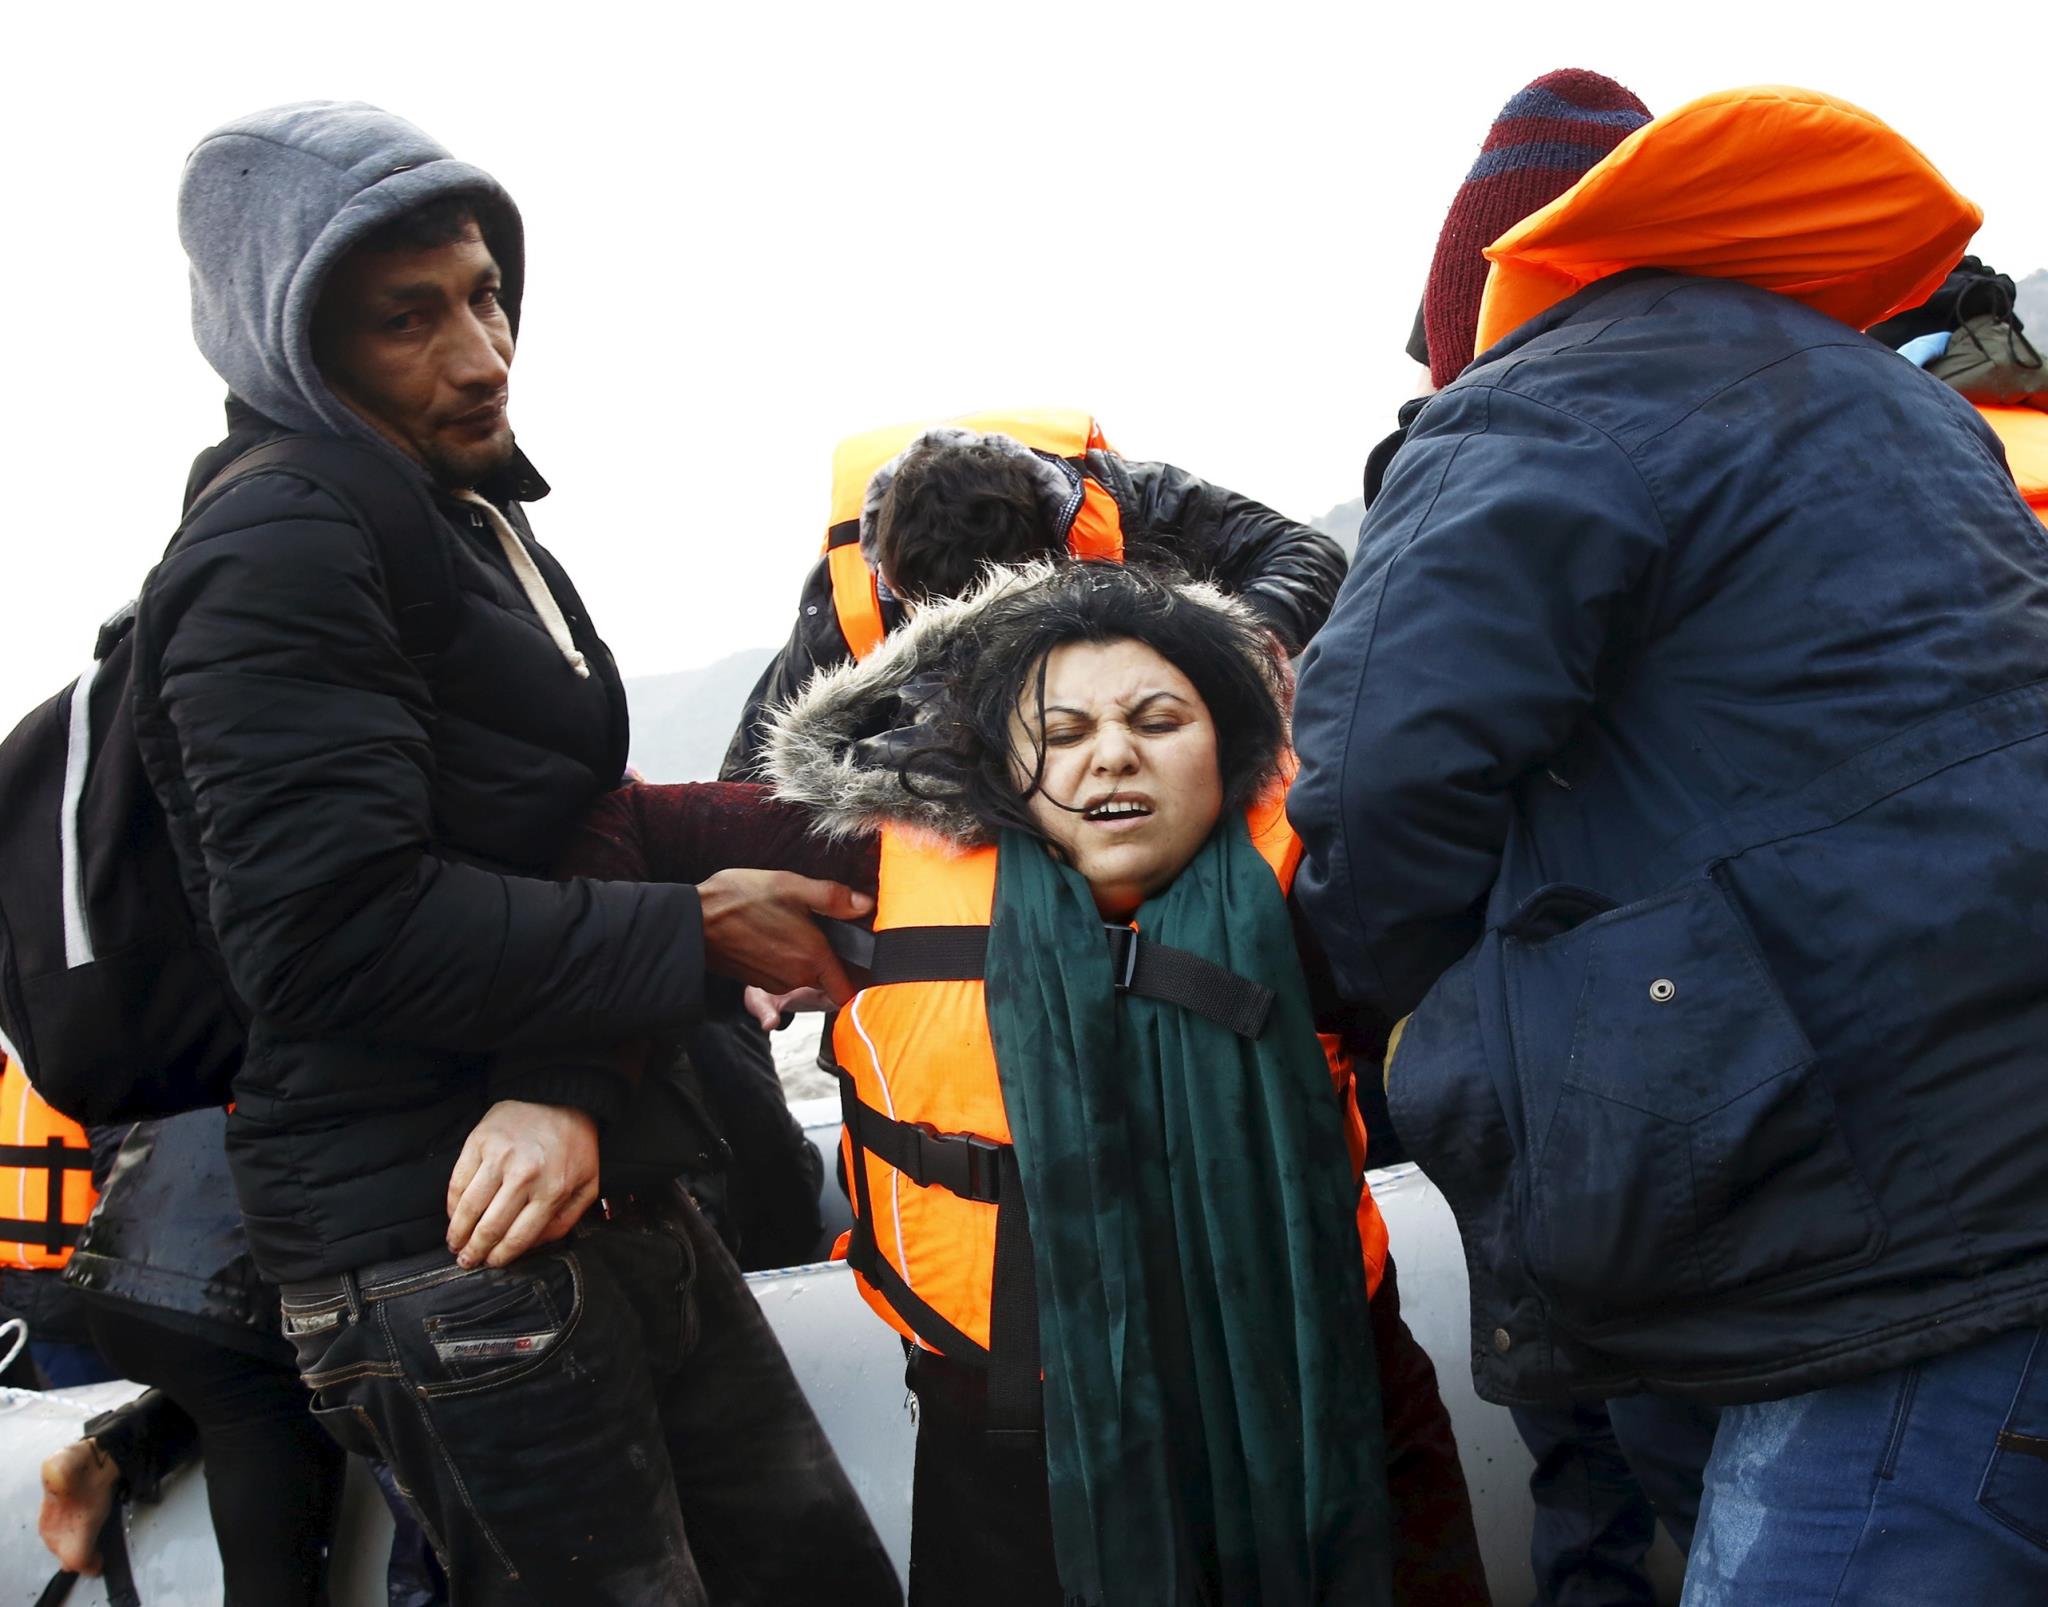 Llegada de refugiados sirios a Lesbos